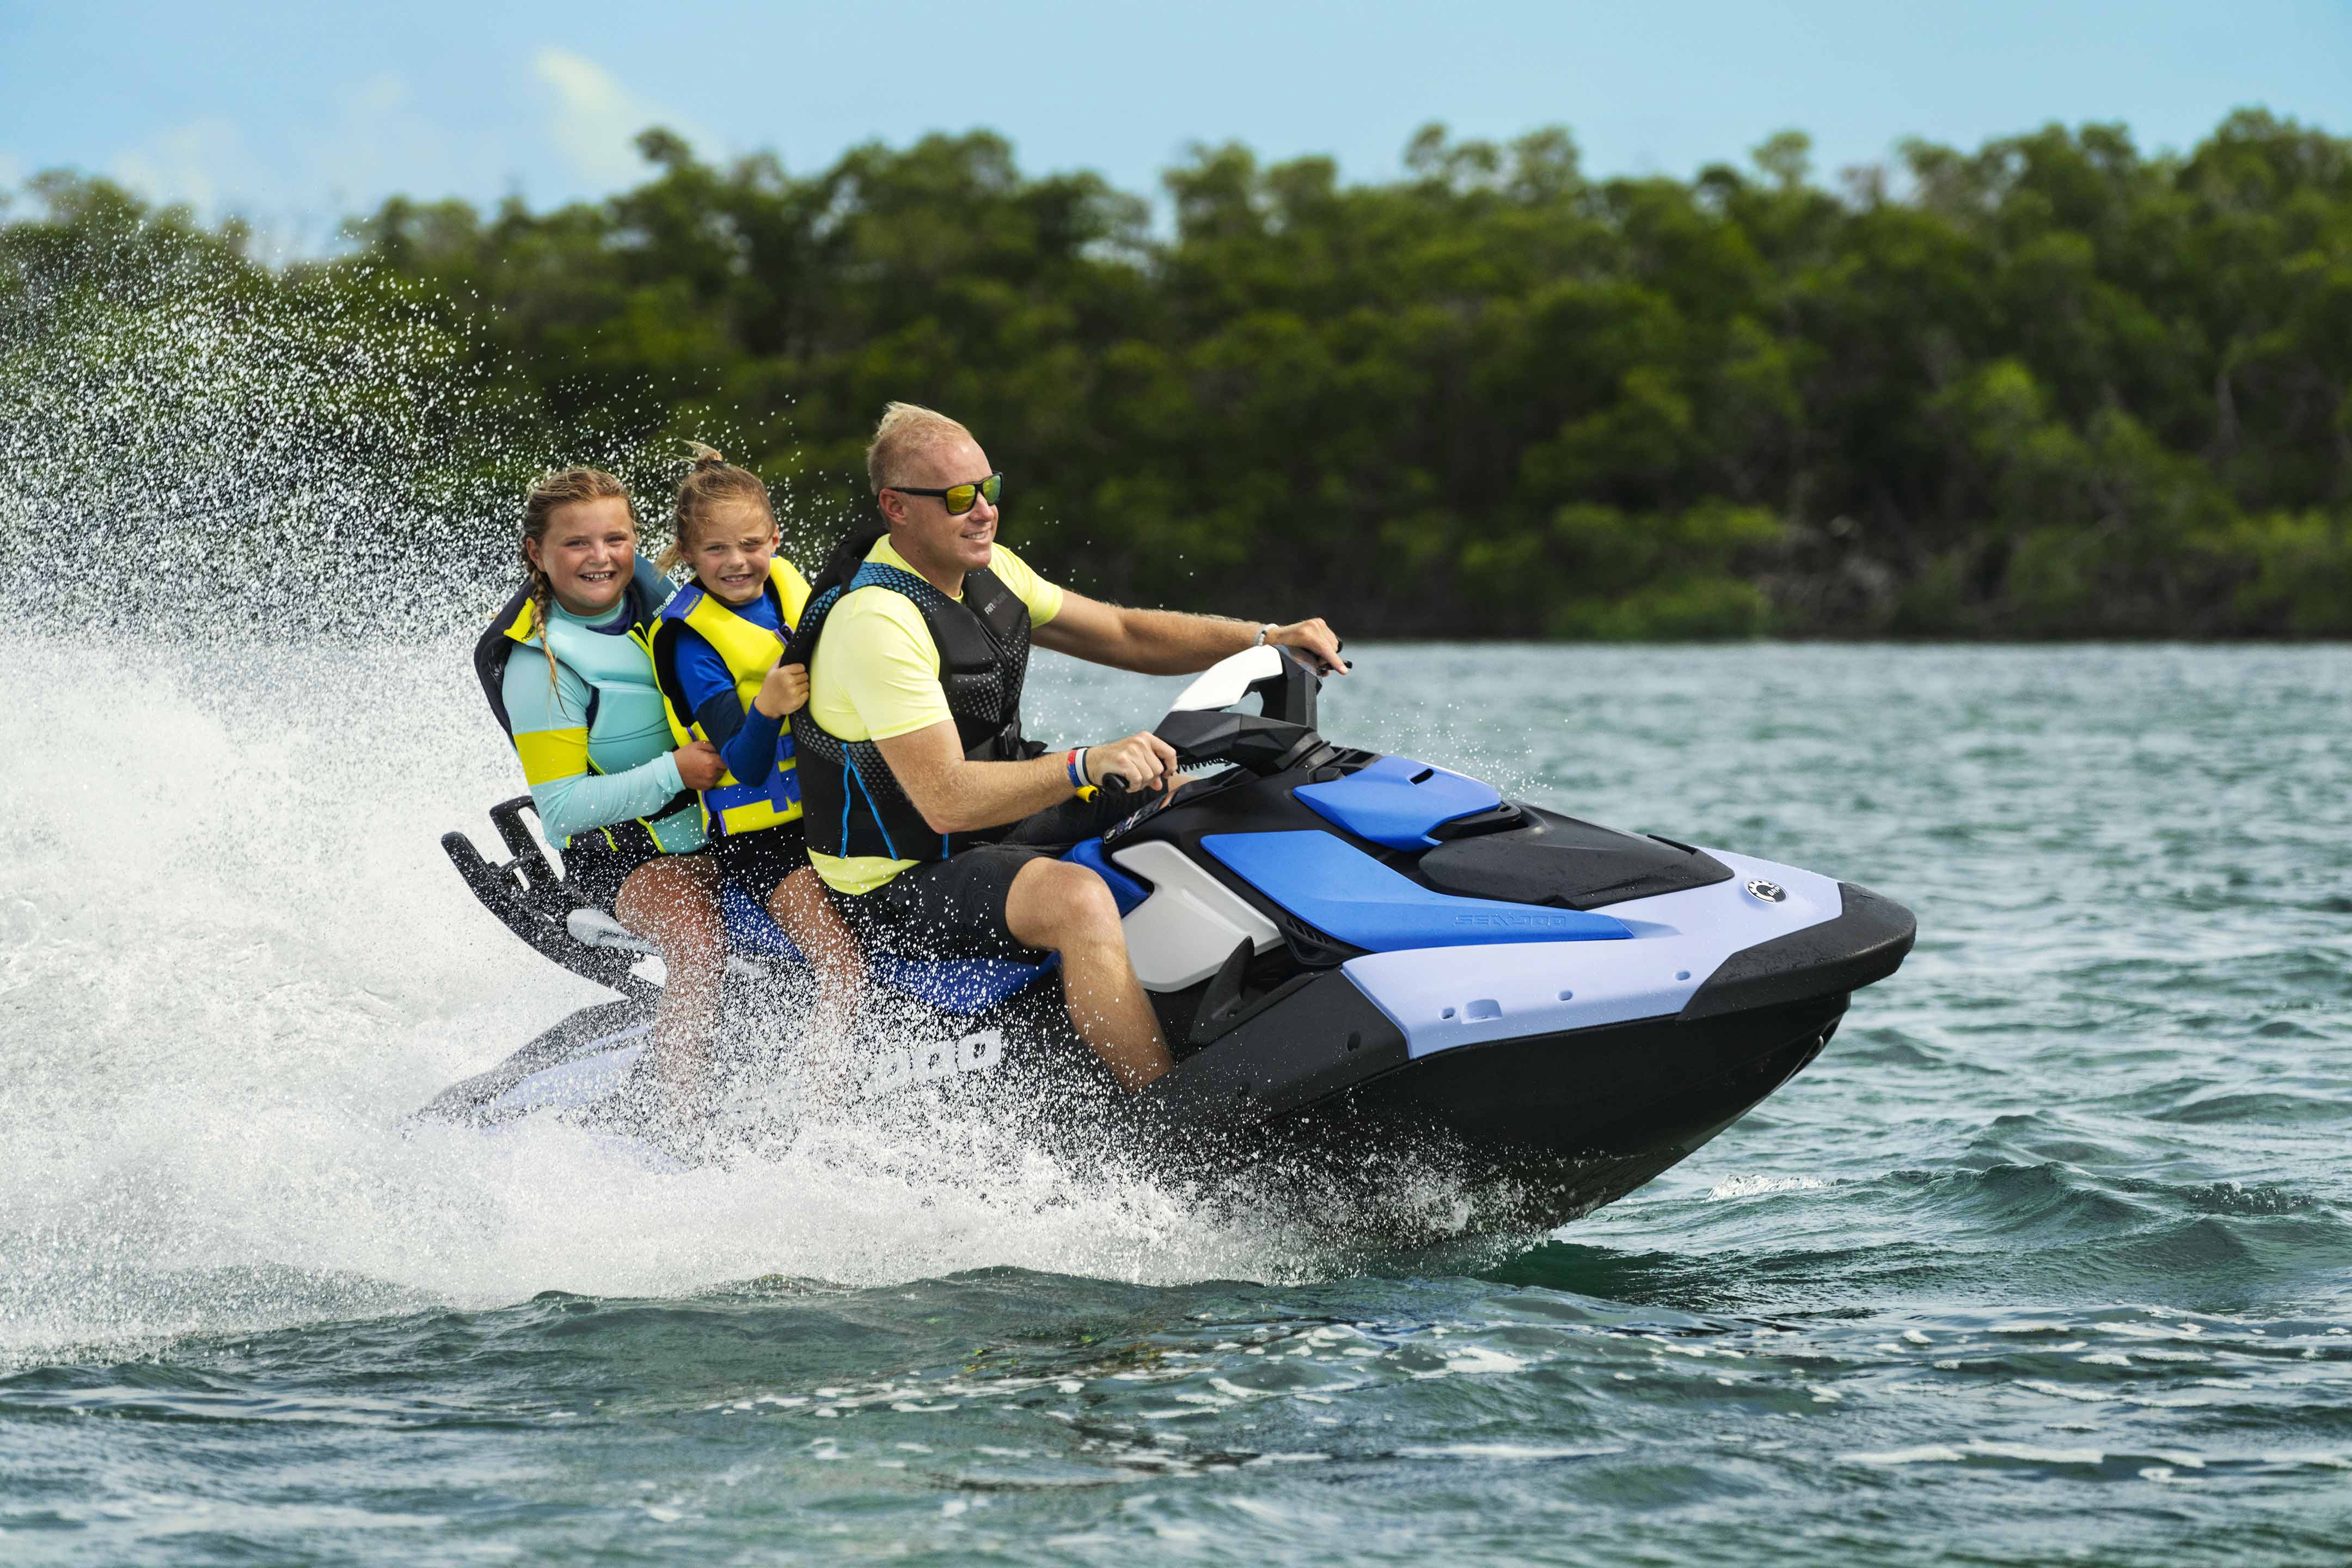 Oče in njegovi hčerki uživata v vožnji z osebnim vodnim plovilom Sea-Doo Spark